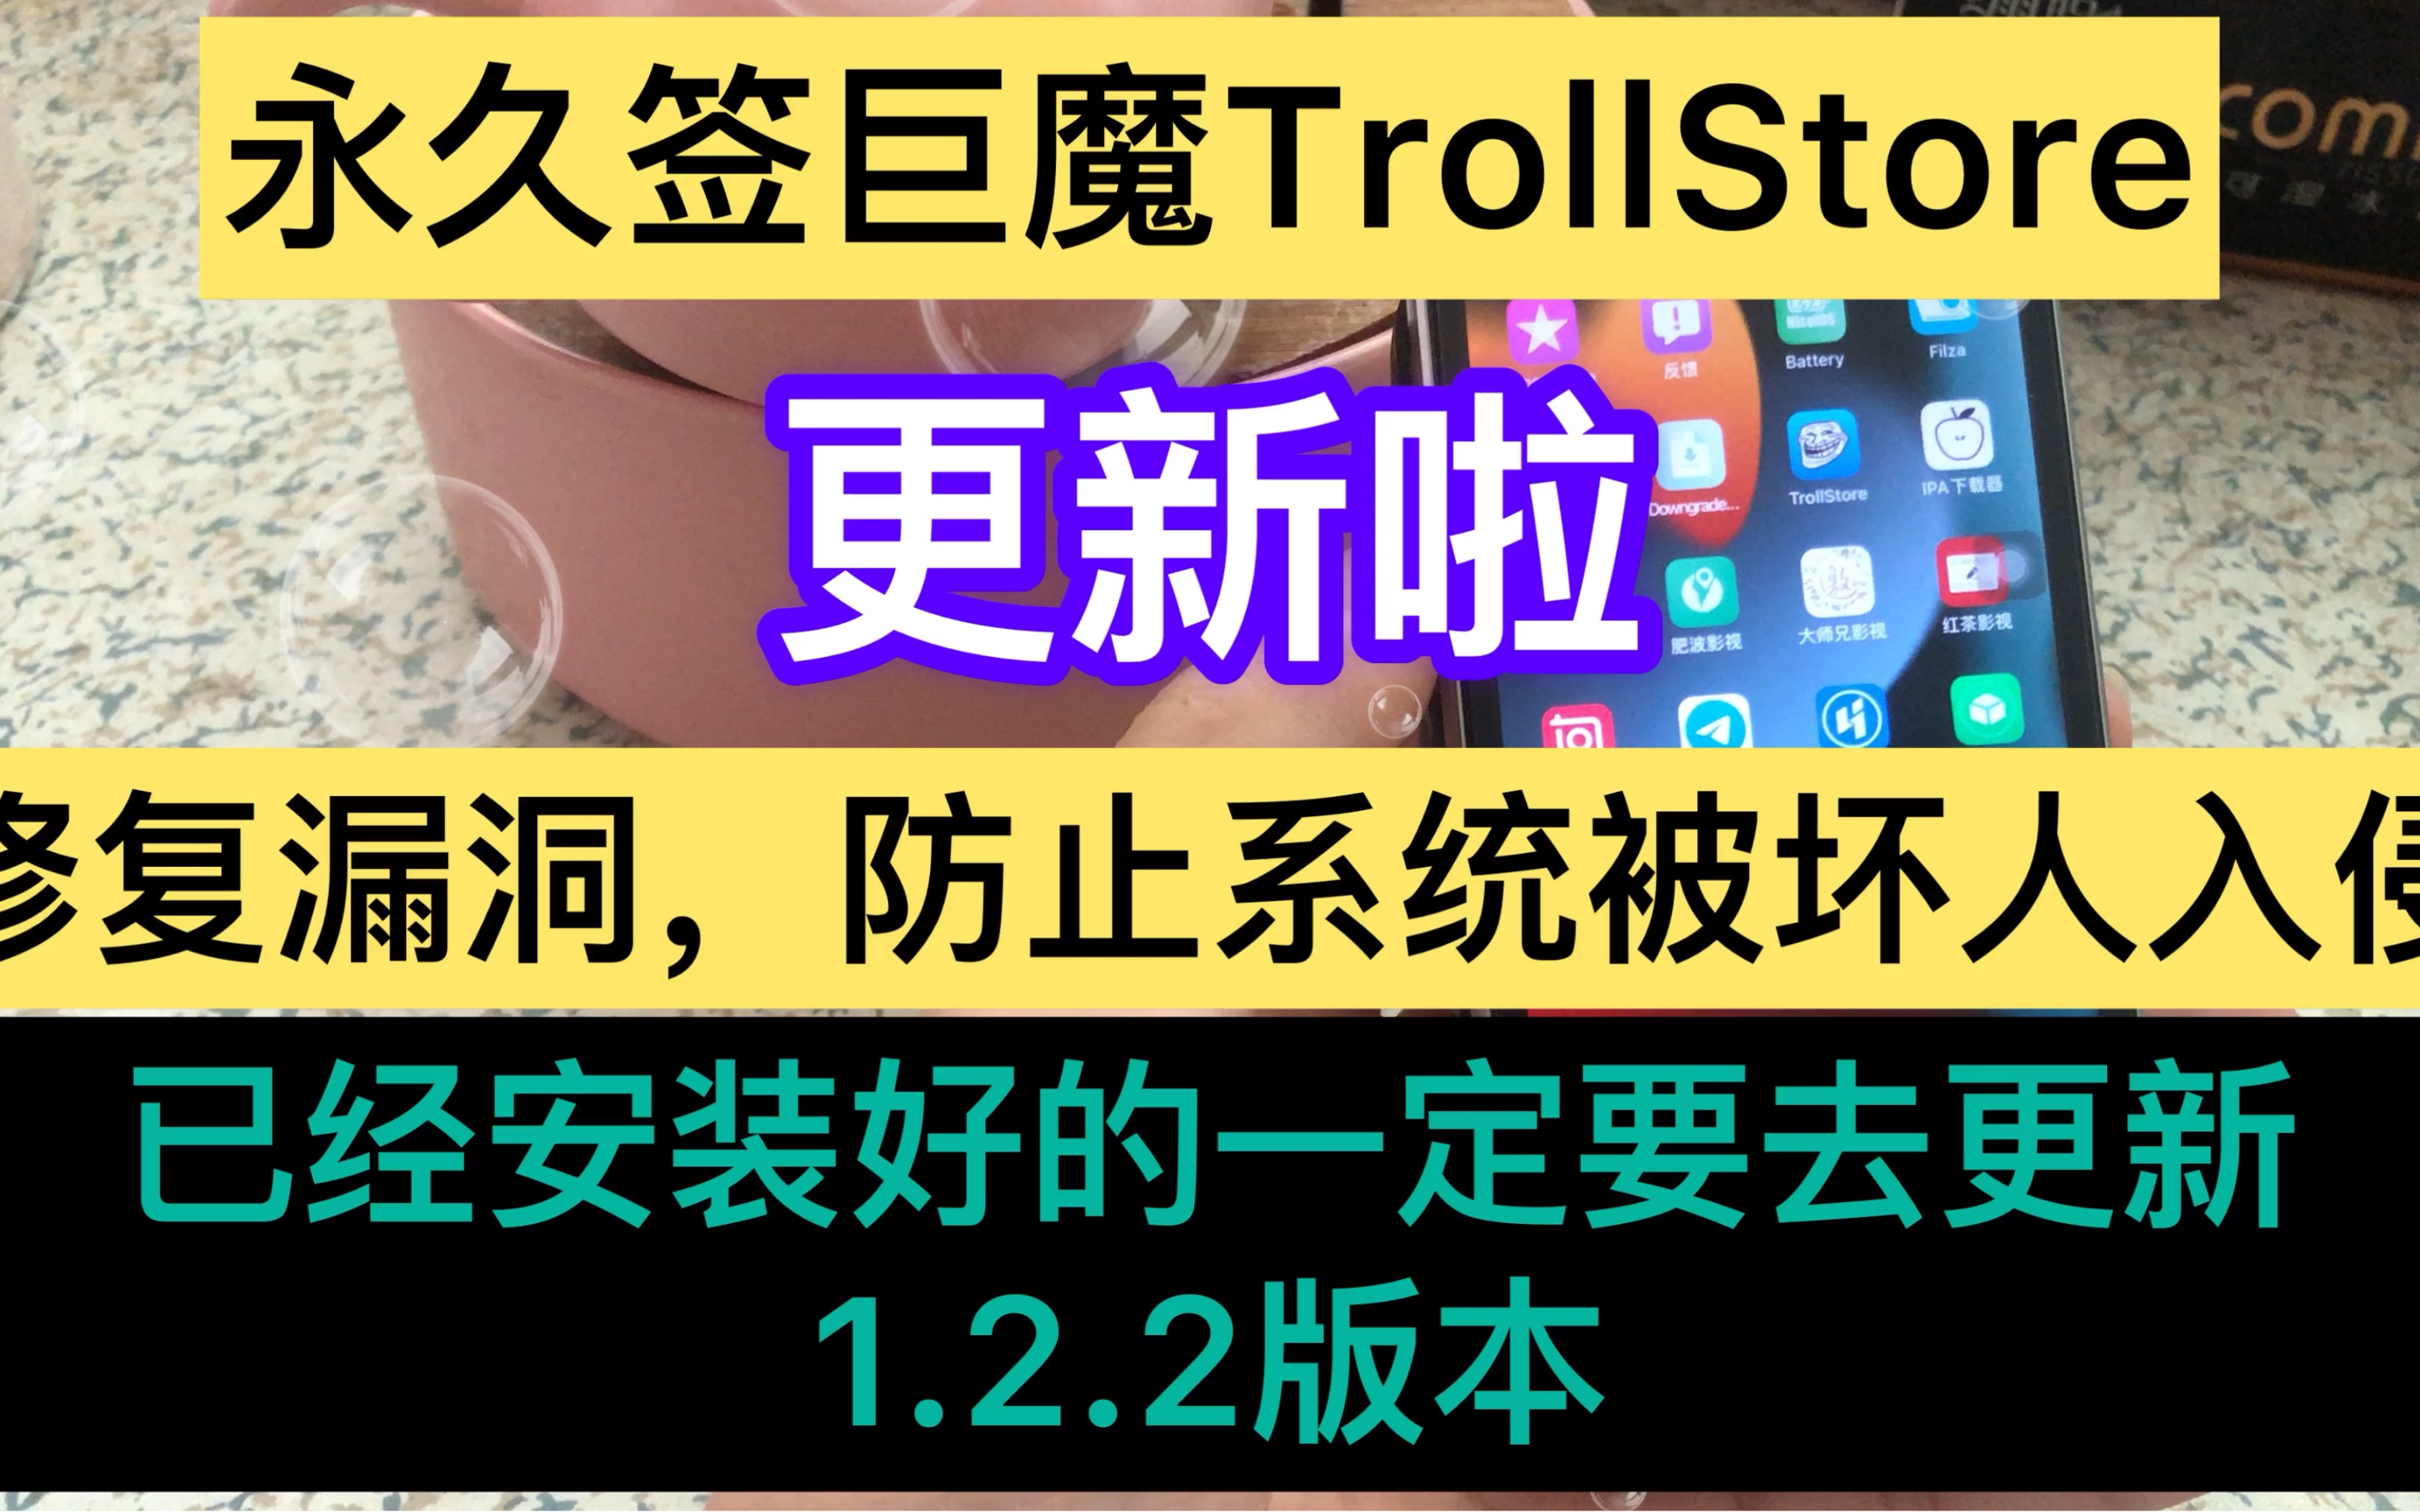 TrollStore网盘官方版下载丨最新版下载丨绿色版下载丨APP下载-123云盘